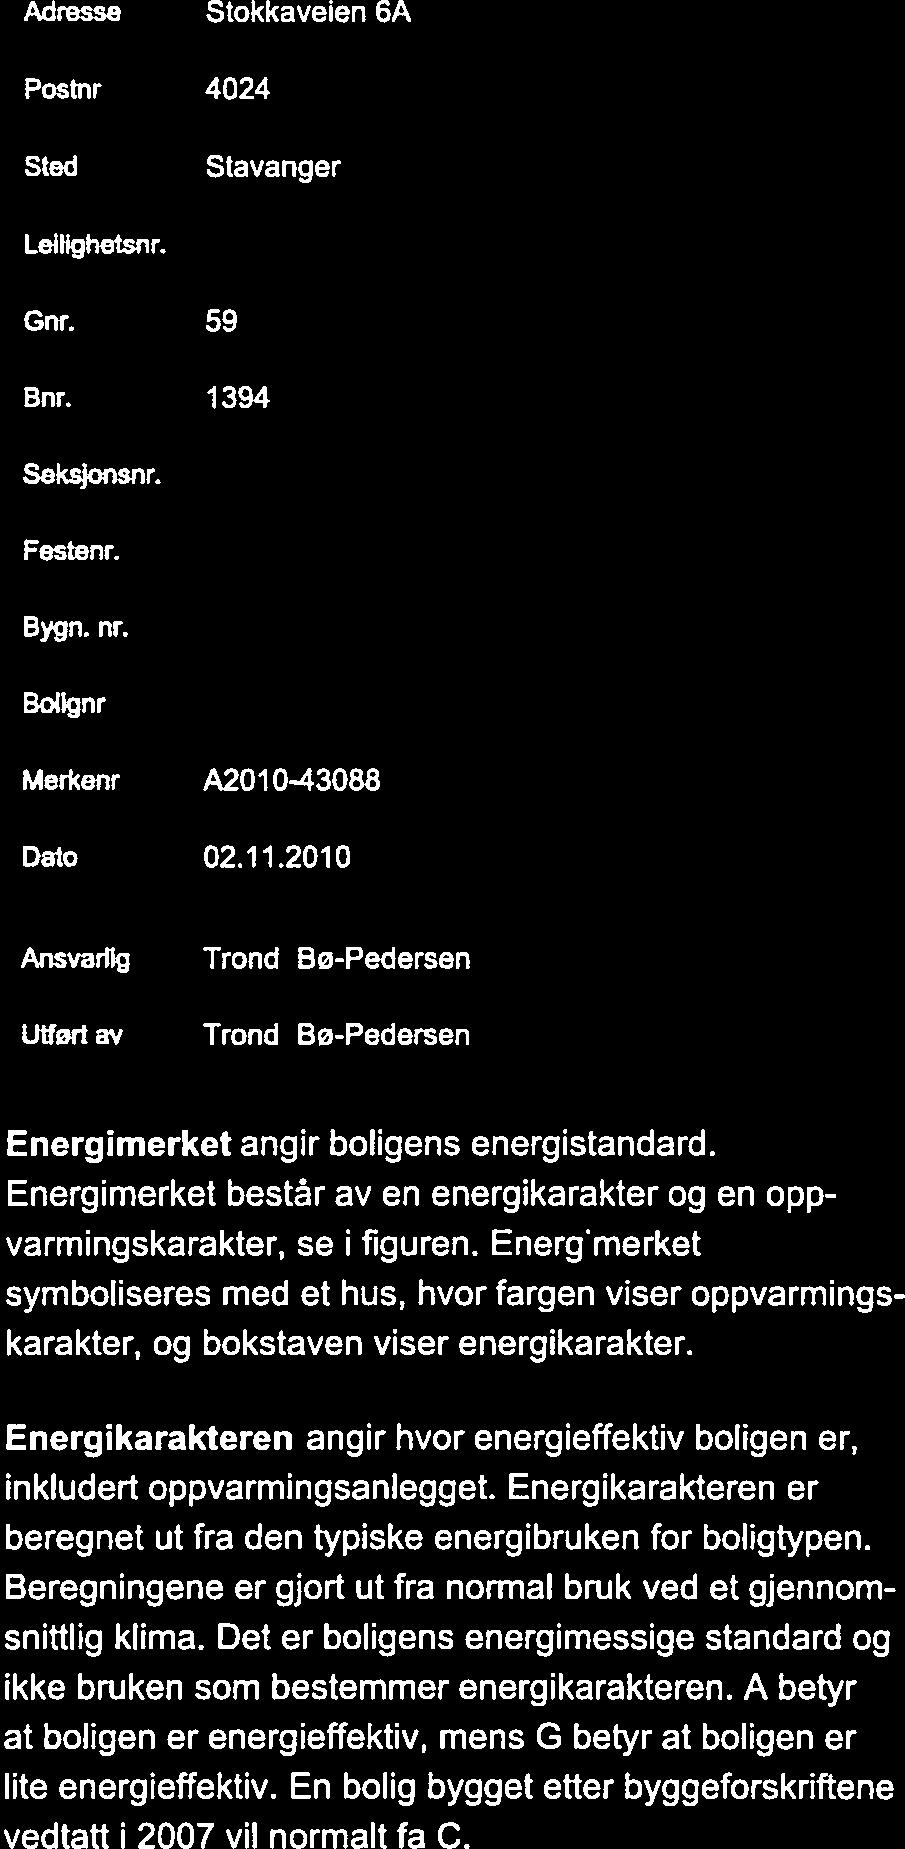 fl NVE ENERGIATTEST Adresse Stokkaveien 6A Energimerke Postnr 4024 Sted Stavanger Leilighetsnr. Gnr. 59 Bnr. 1394 Seksjonsnr.